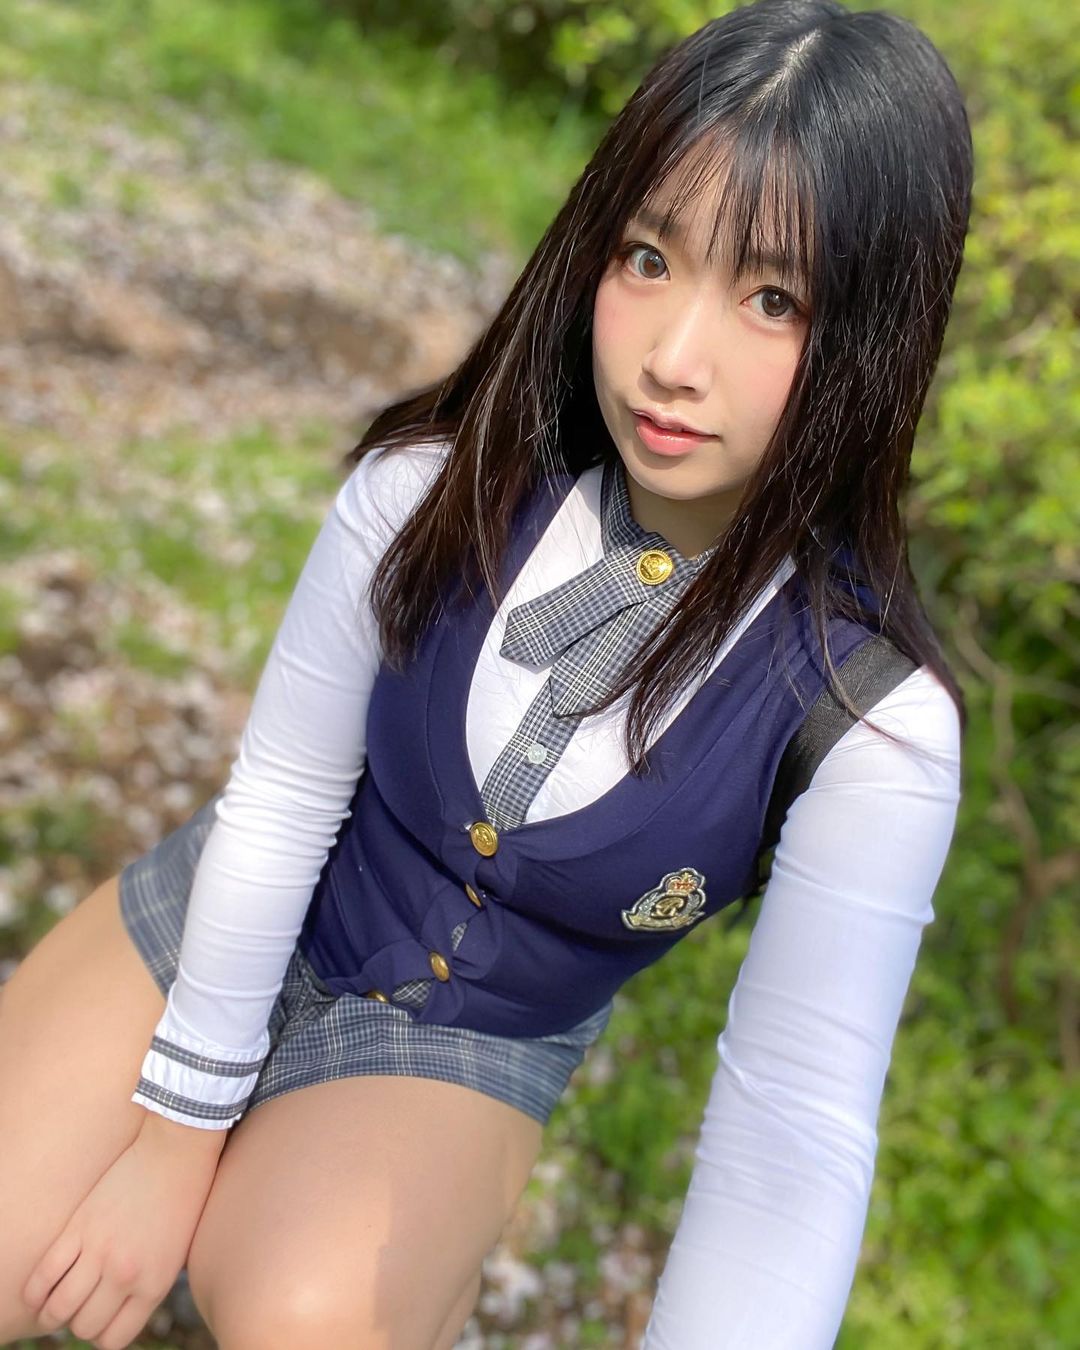 日本短发美女丰满身材性感美腿校服写真_美女图片_mm4000图片大全